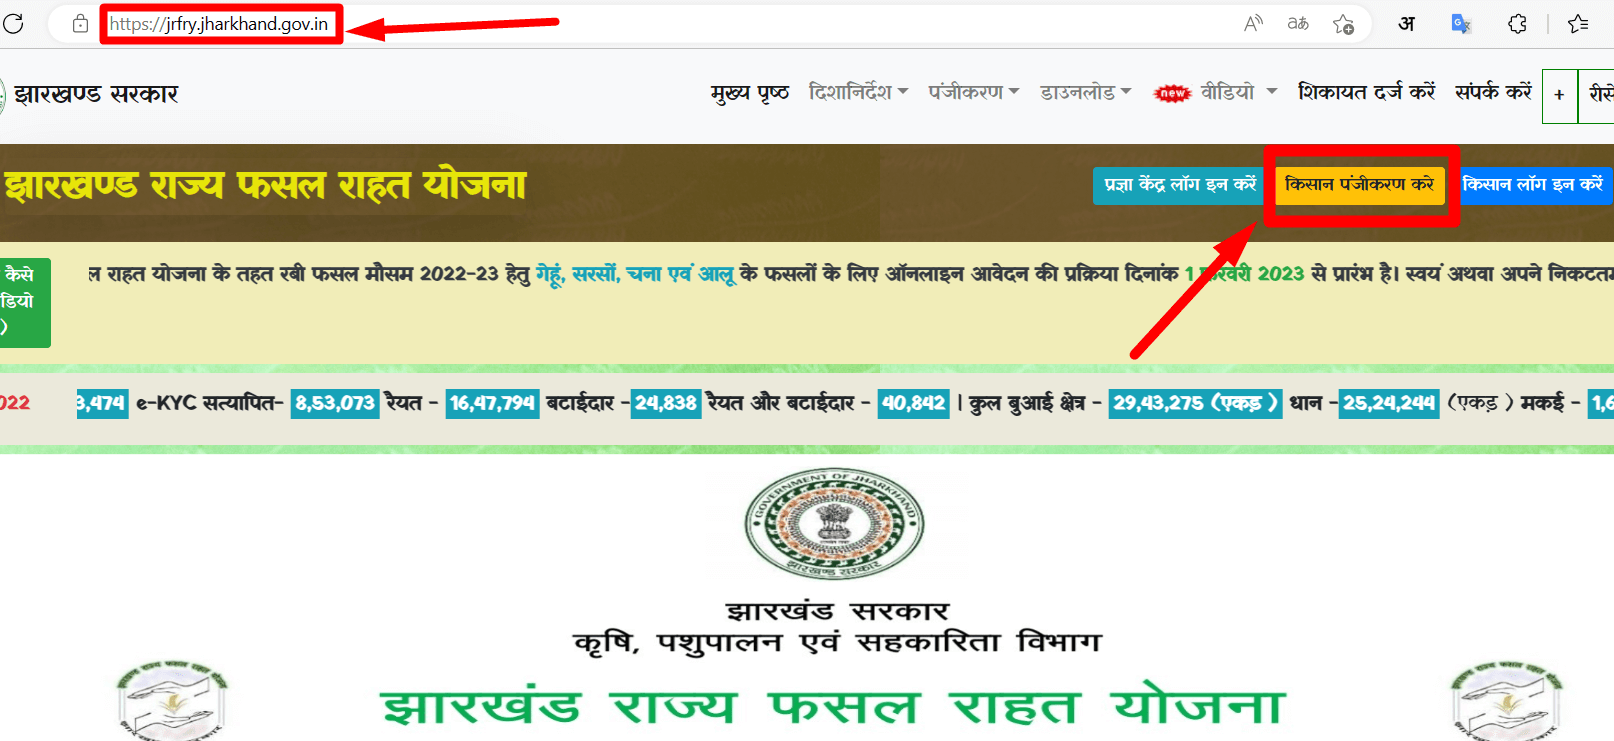 झारखण्ड राज्य फसल राहत योजना ऑनलाईन पंजीकरण- Jrfry fasal rahat yojana online registration